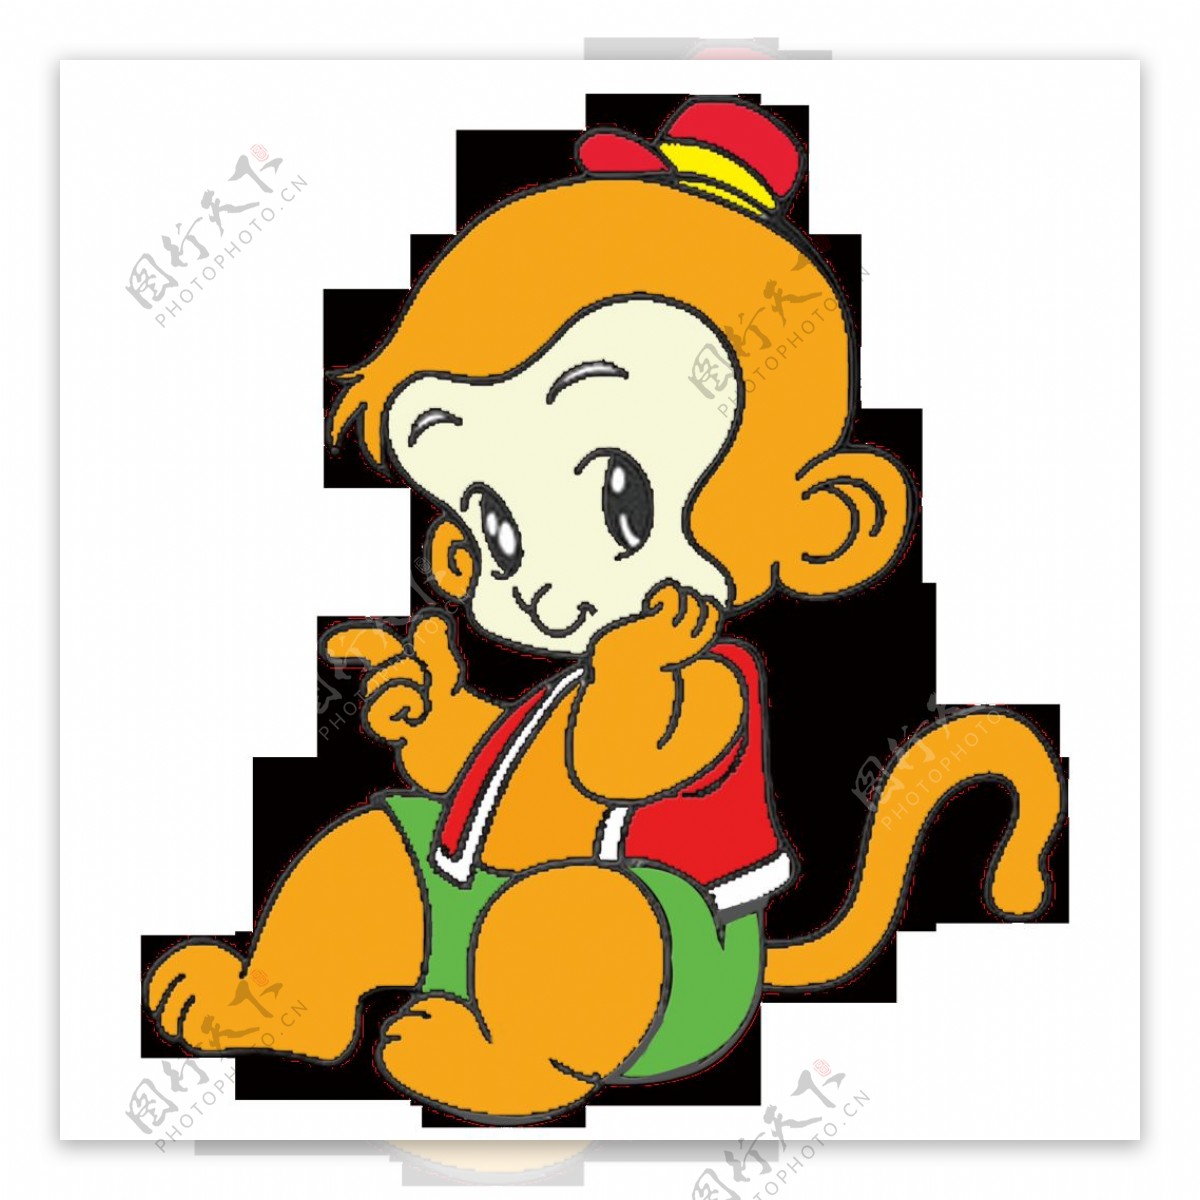 唯美卡通可爱猴子素材